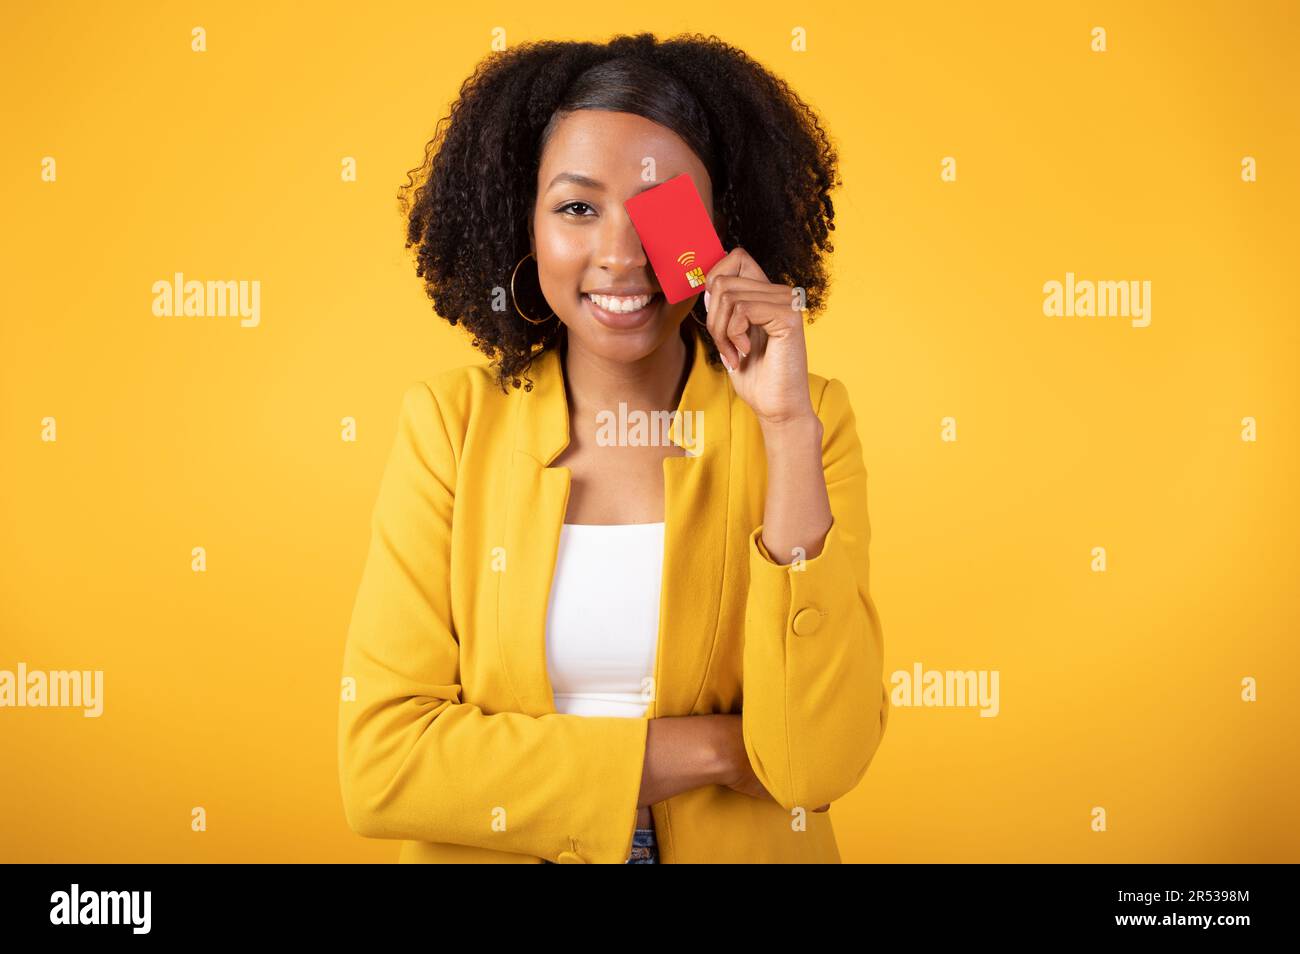 Paiements faciles. Jeune femme noire excitée couvrant l'œil avec carte de crédit et souriant à l'appareil photo, fond jaune Banque D'Images